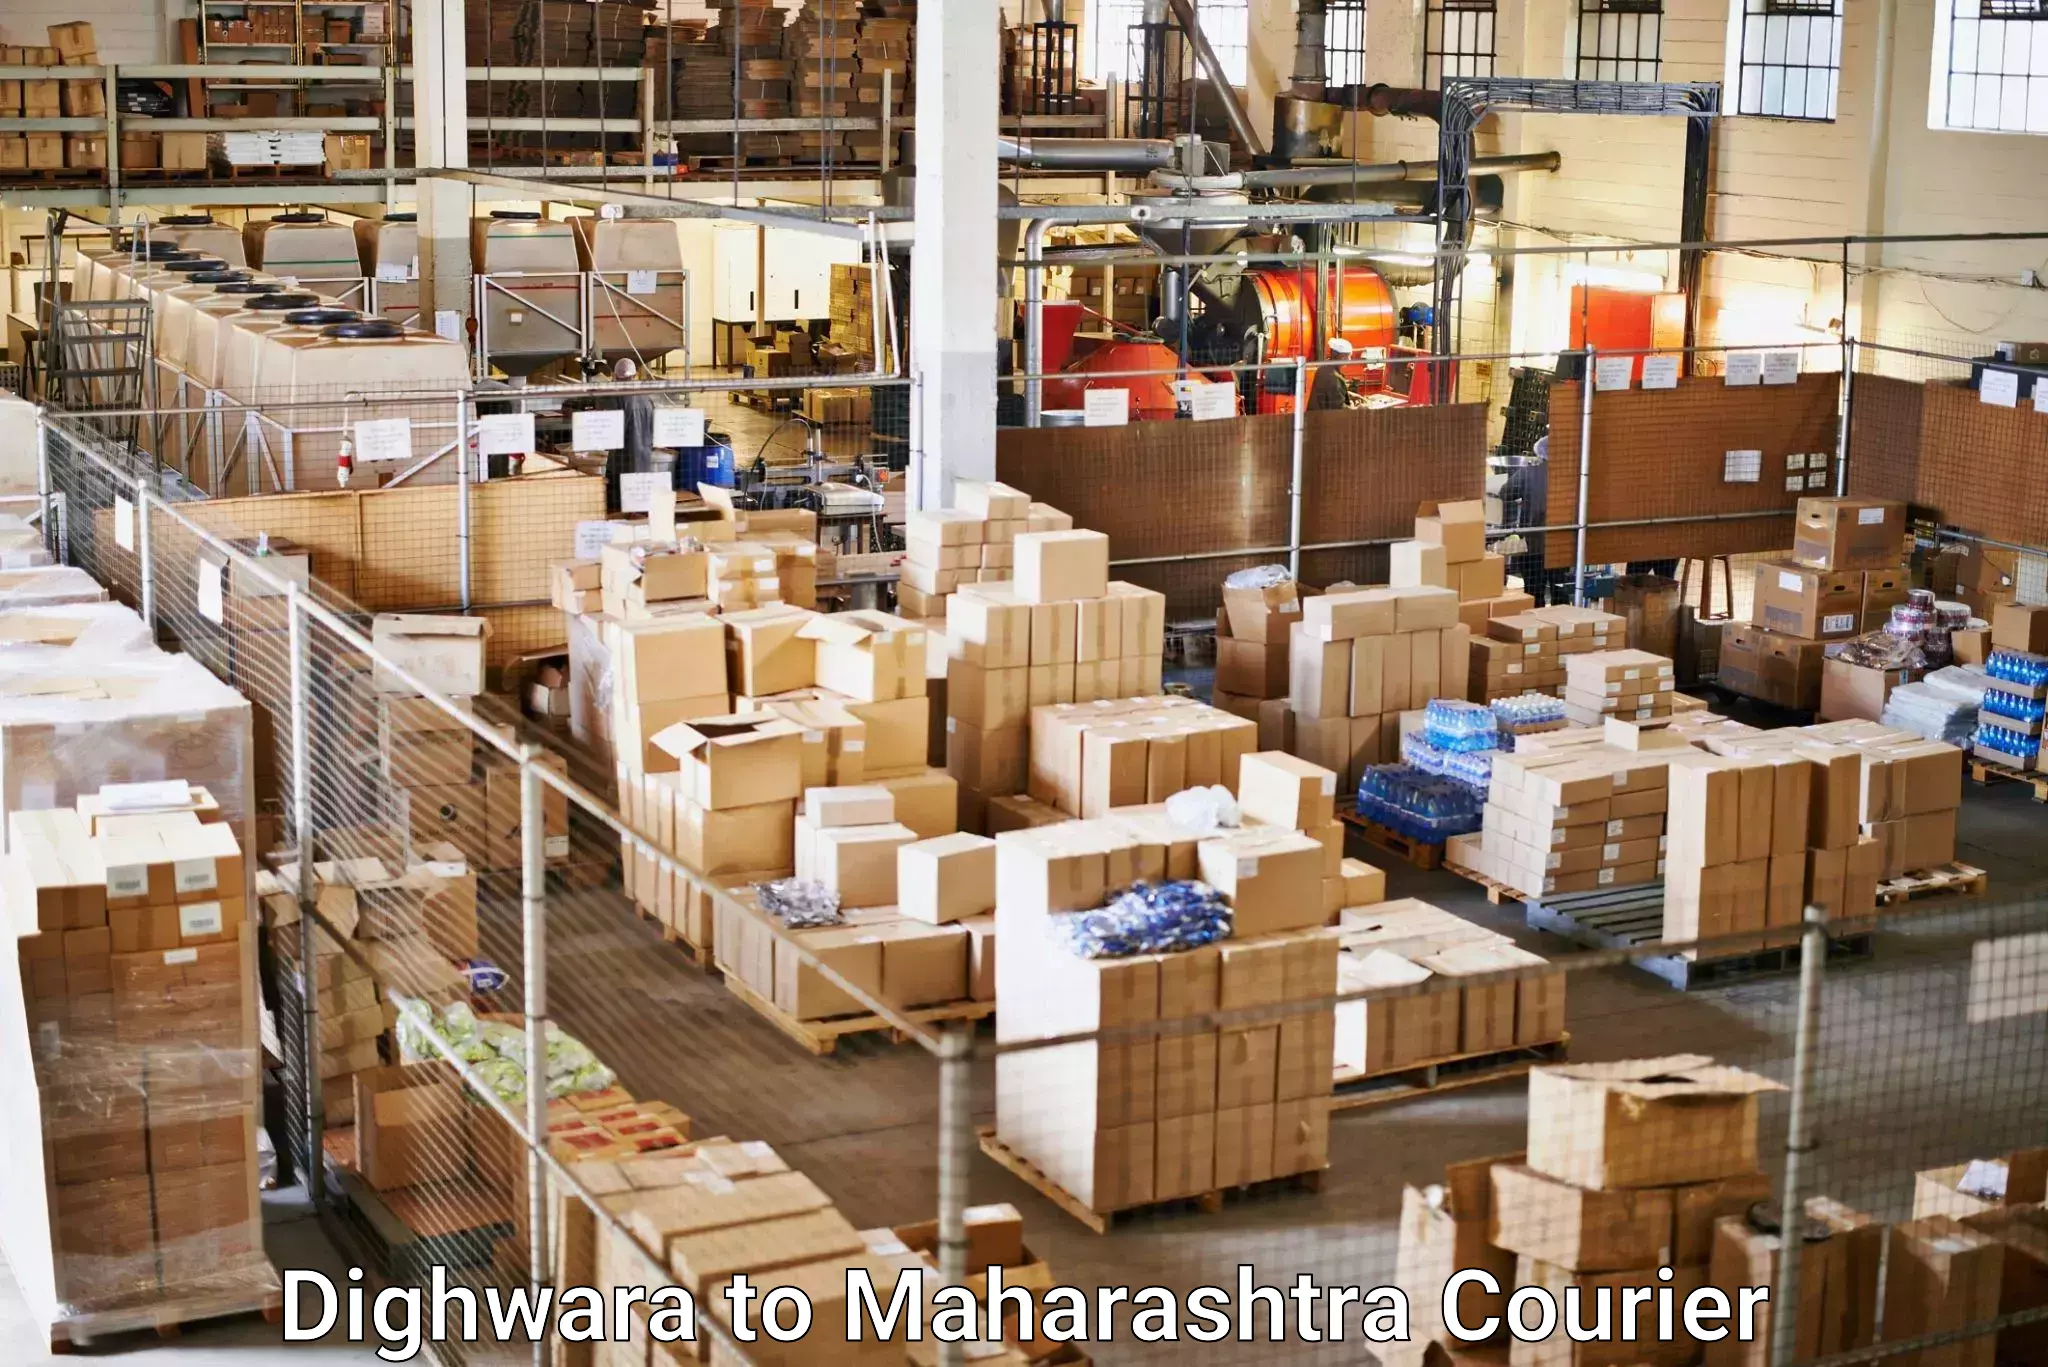 Express logistics service Dighwara to Mahagaon